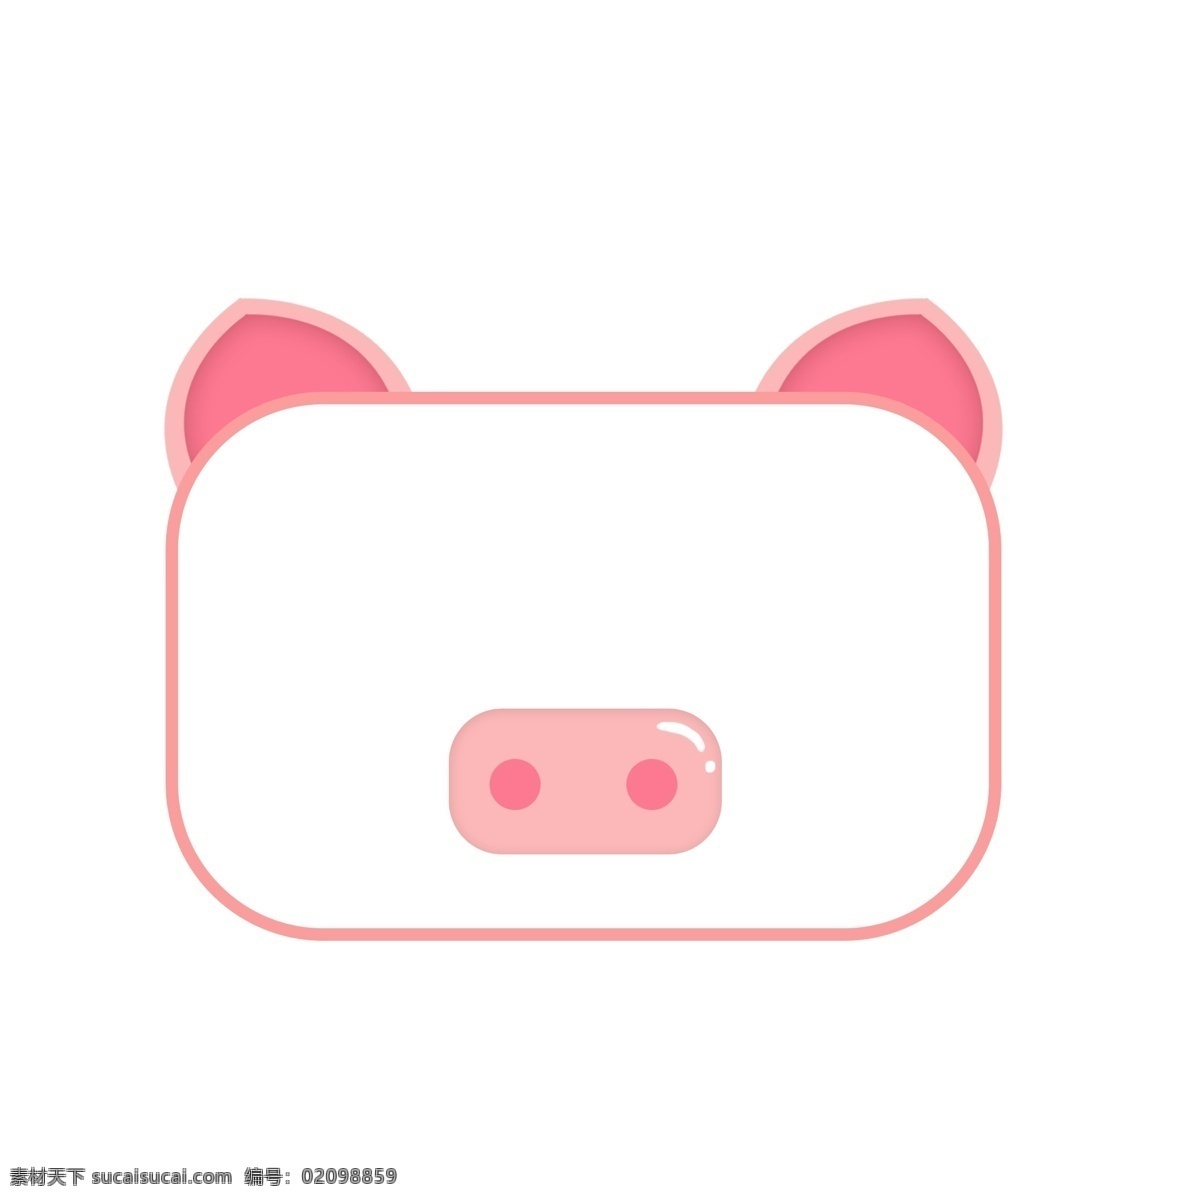 可爱 动物 猪 对话框 文本 框 卡通文本框 可爱对话框 异形对话框 彩色对话框 气泡对话框 可爱动物 猪猪对话框 文本框